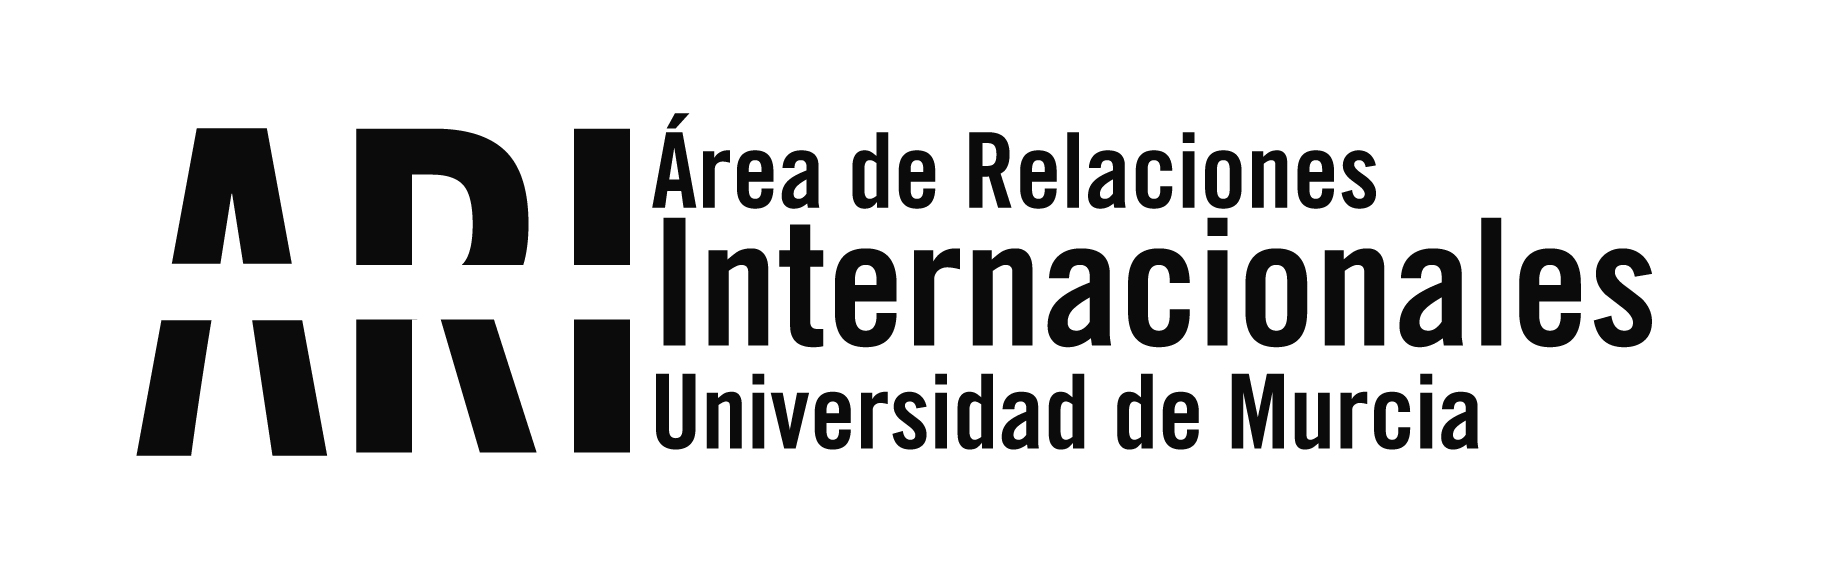 Bienvenida Universidad de Murcia Internacional 2016-17 2 Cuatrimestre - Área de Relaciones Internacionales